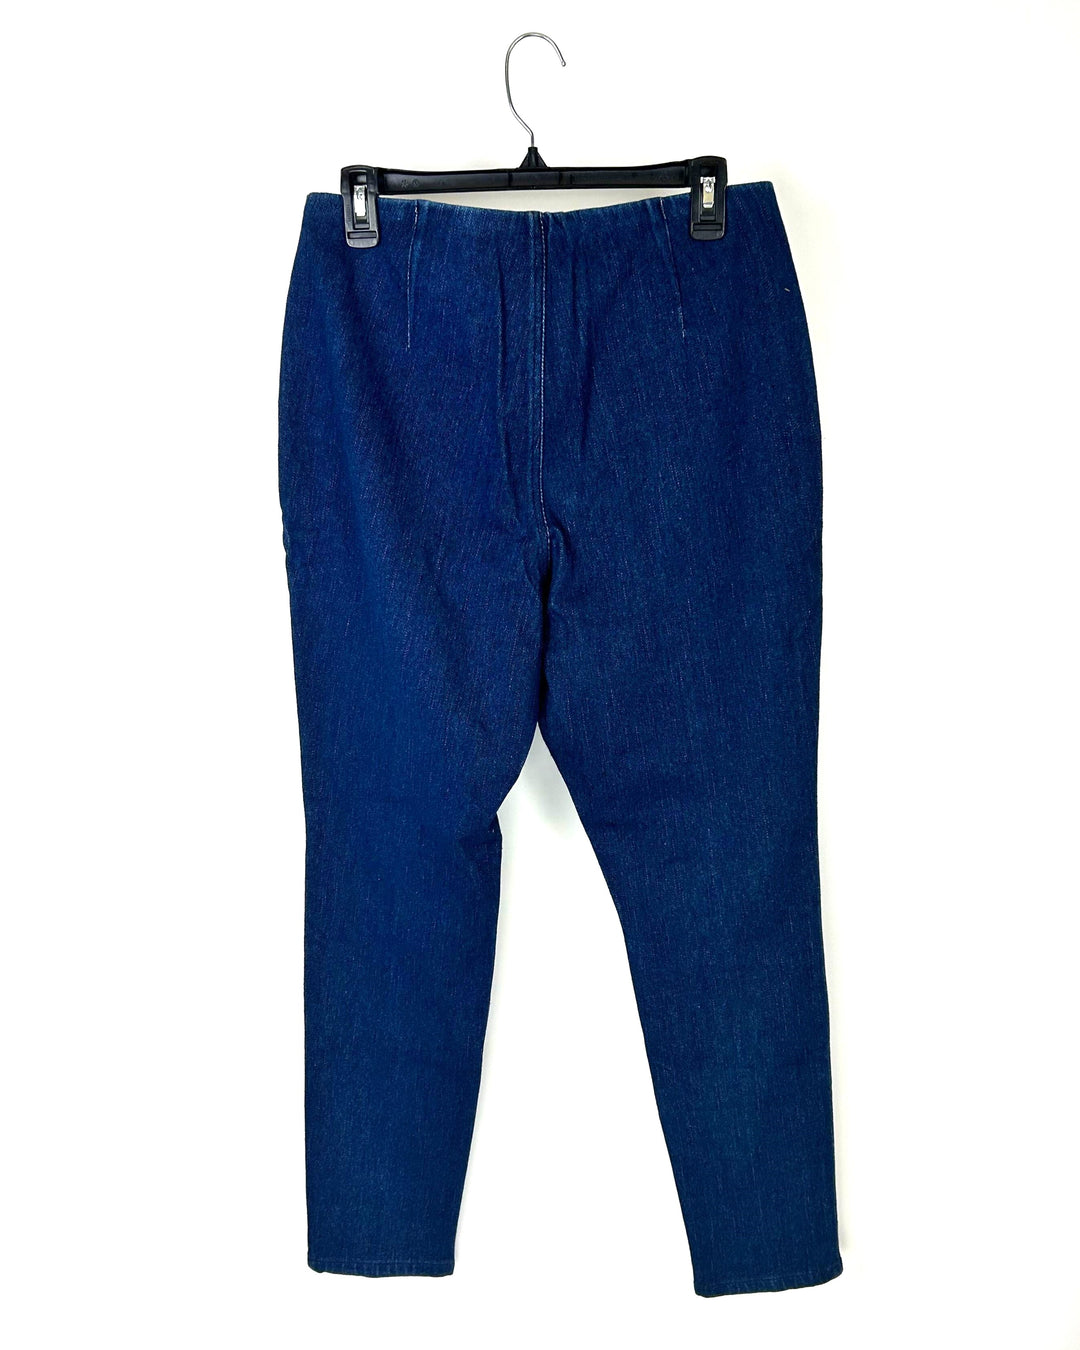 Medium Wash Side Design Denim Pants - Size 12